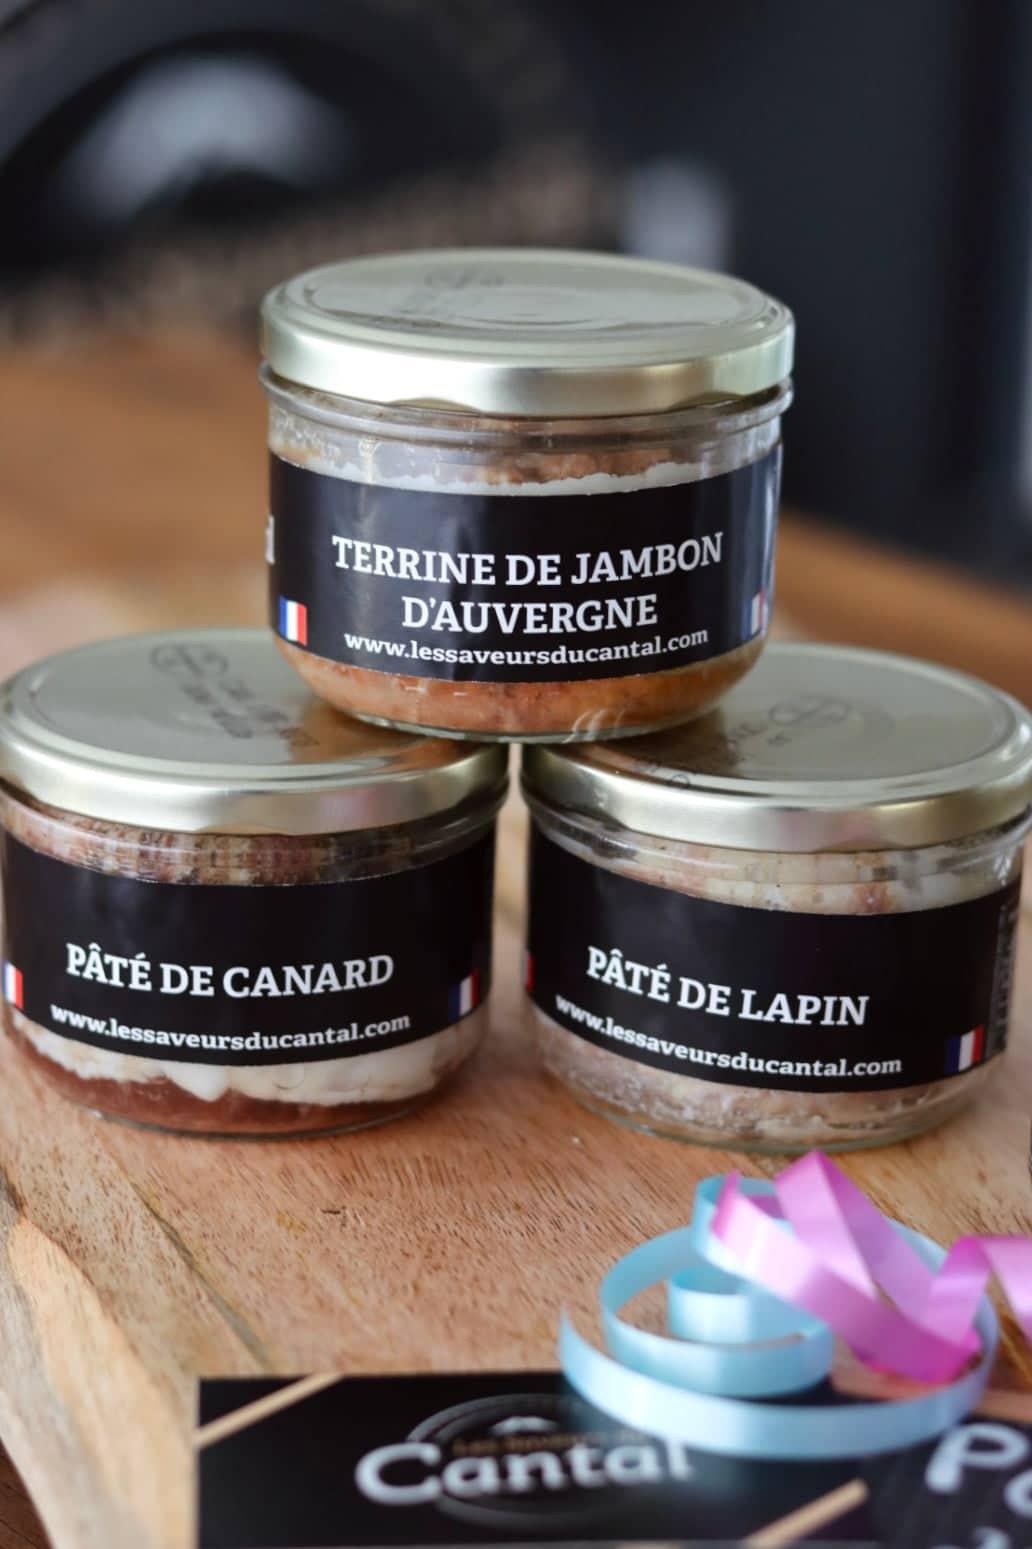 Coffret champêtre - Foie gras, rillettes, pâté, saucisson et confit -  Maison Dufrexe